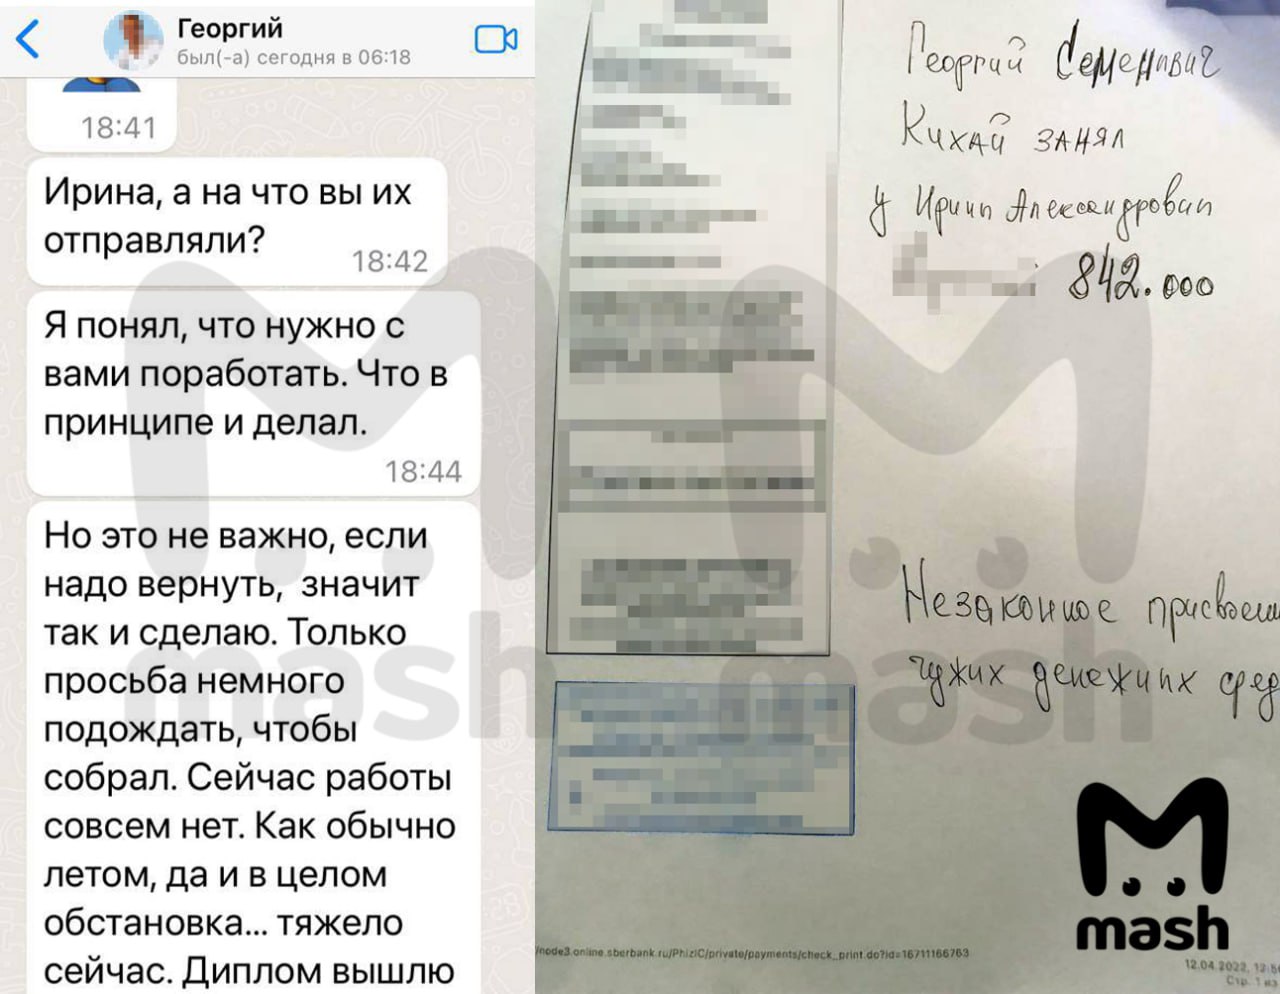 Косметолог из Новосибирска обвинила руководителя школы космоэнергетики в краже двух миллионов рублей